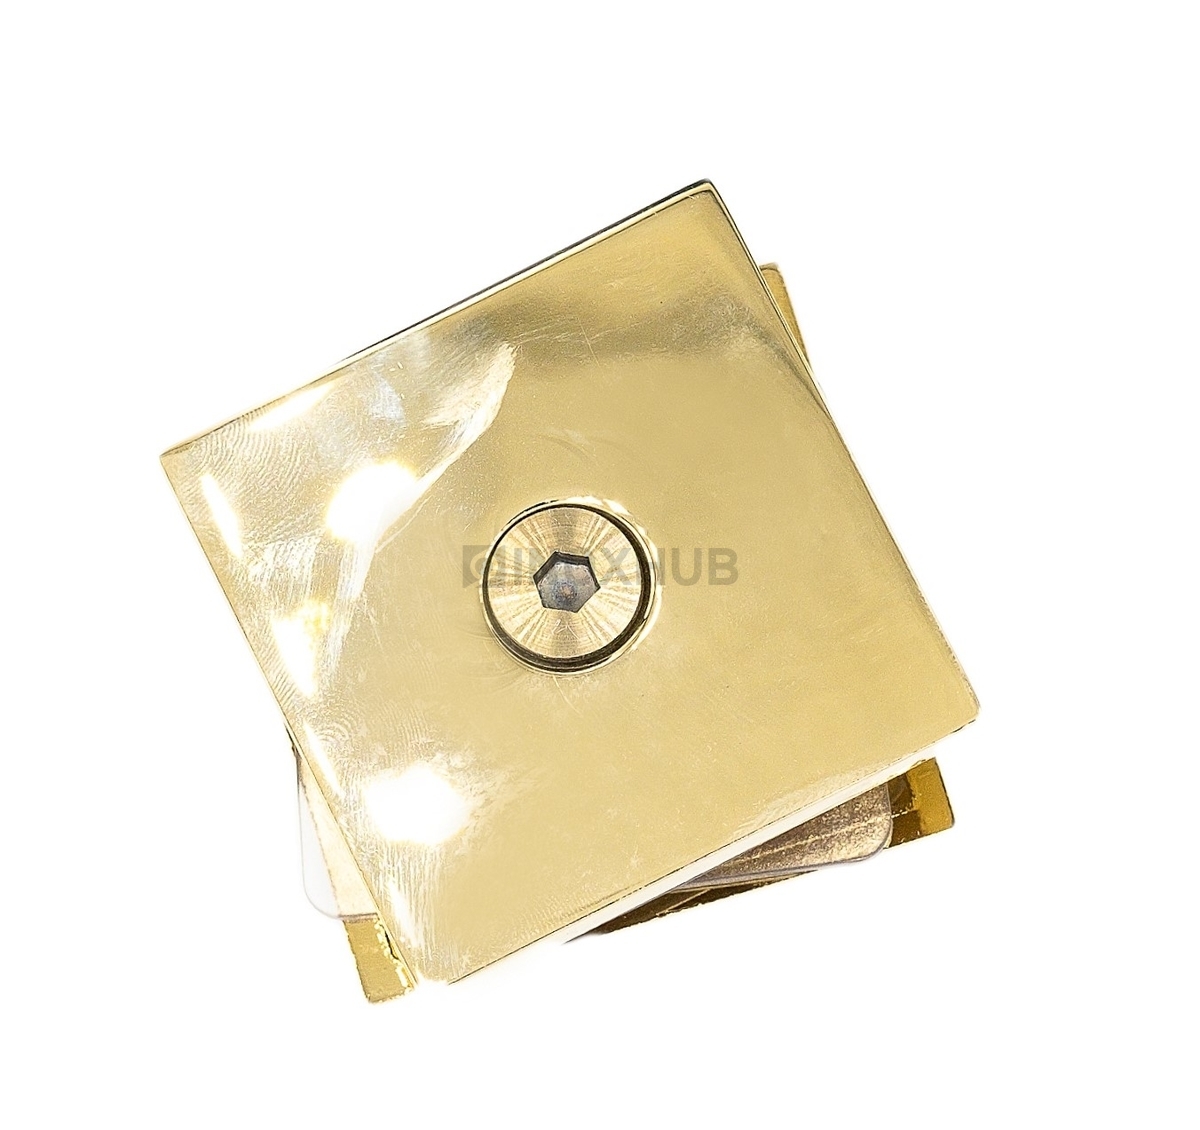 Коннектор (721-1 Gold) стекло-стена, 1 отверстие, под Золото